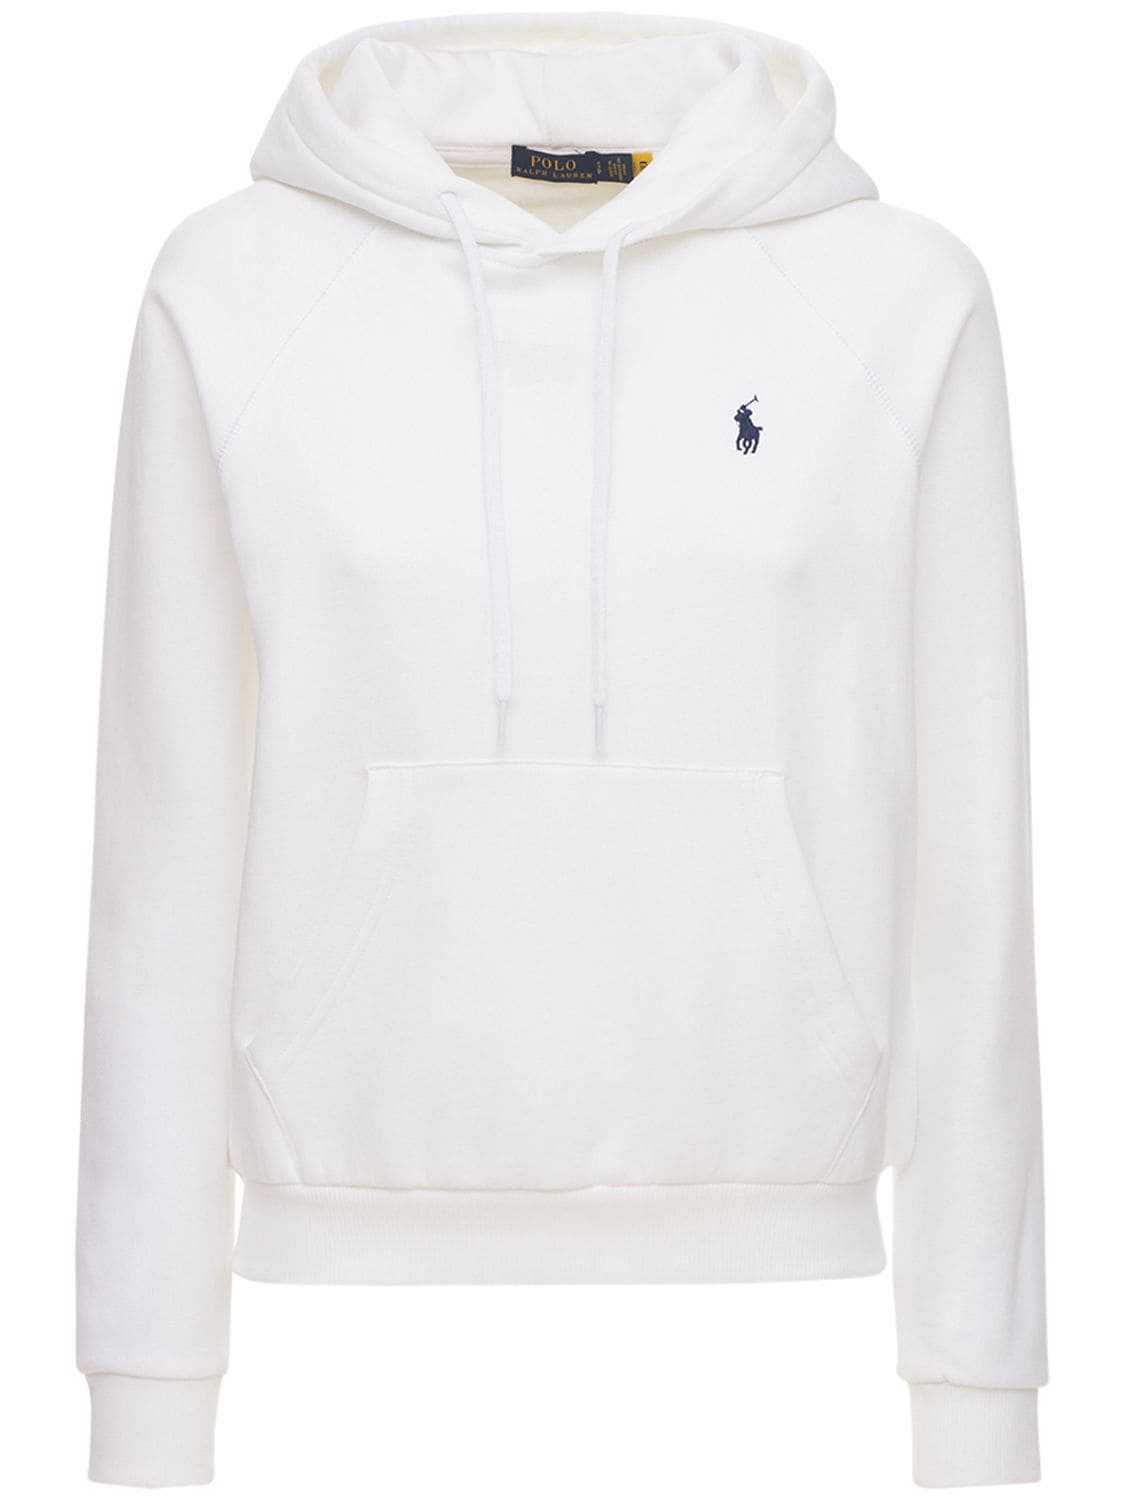 Polo Ralph Lauren - Logo jersey sweatshirt hoodie - White | Luisaviaroma